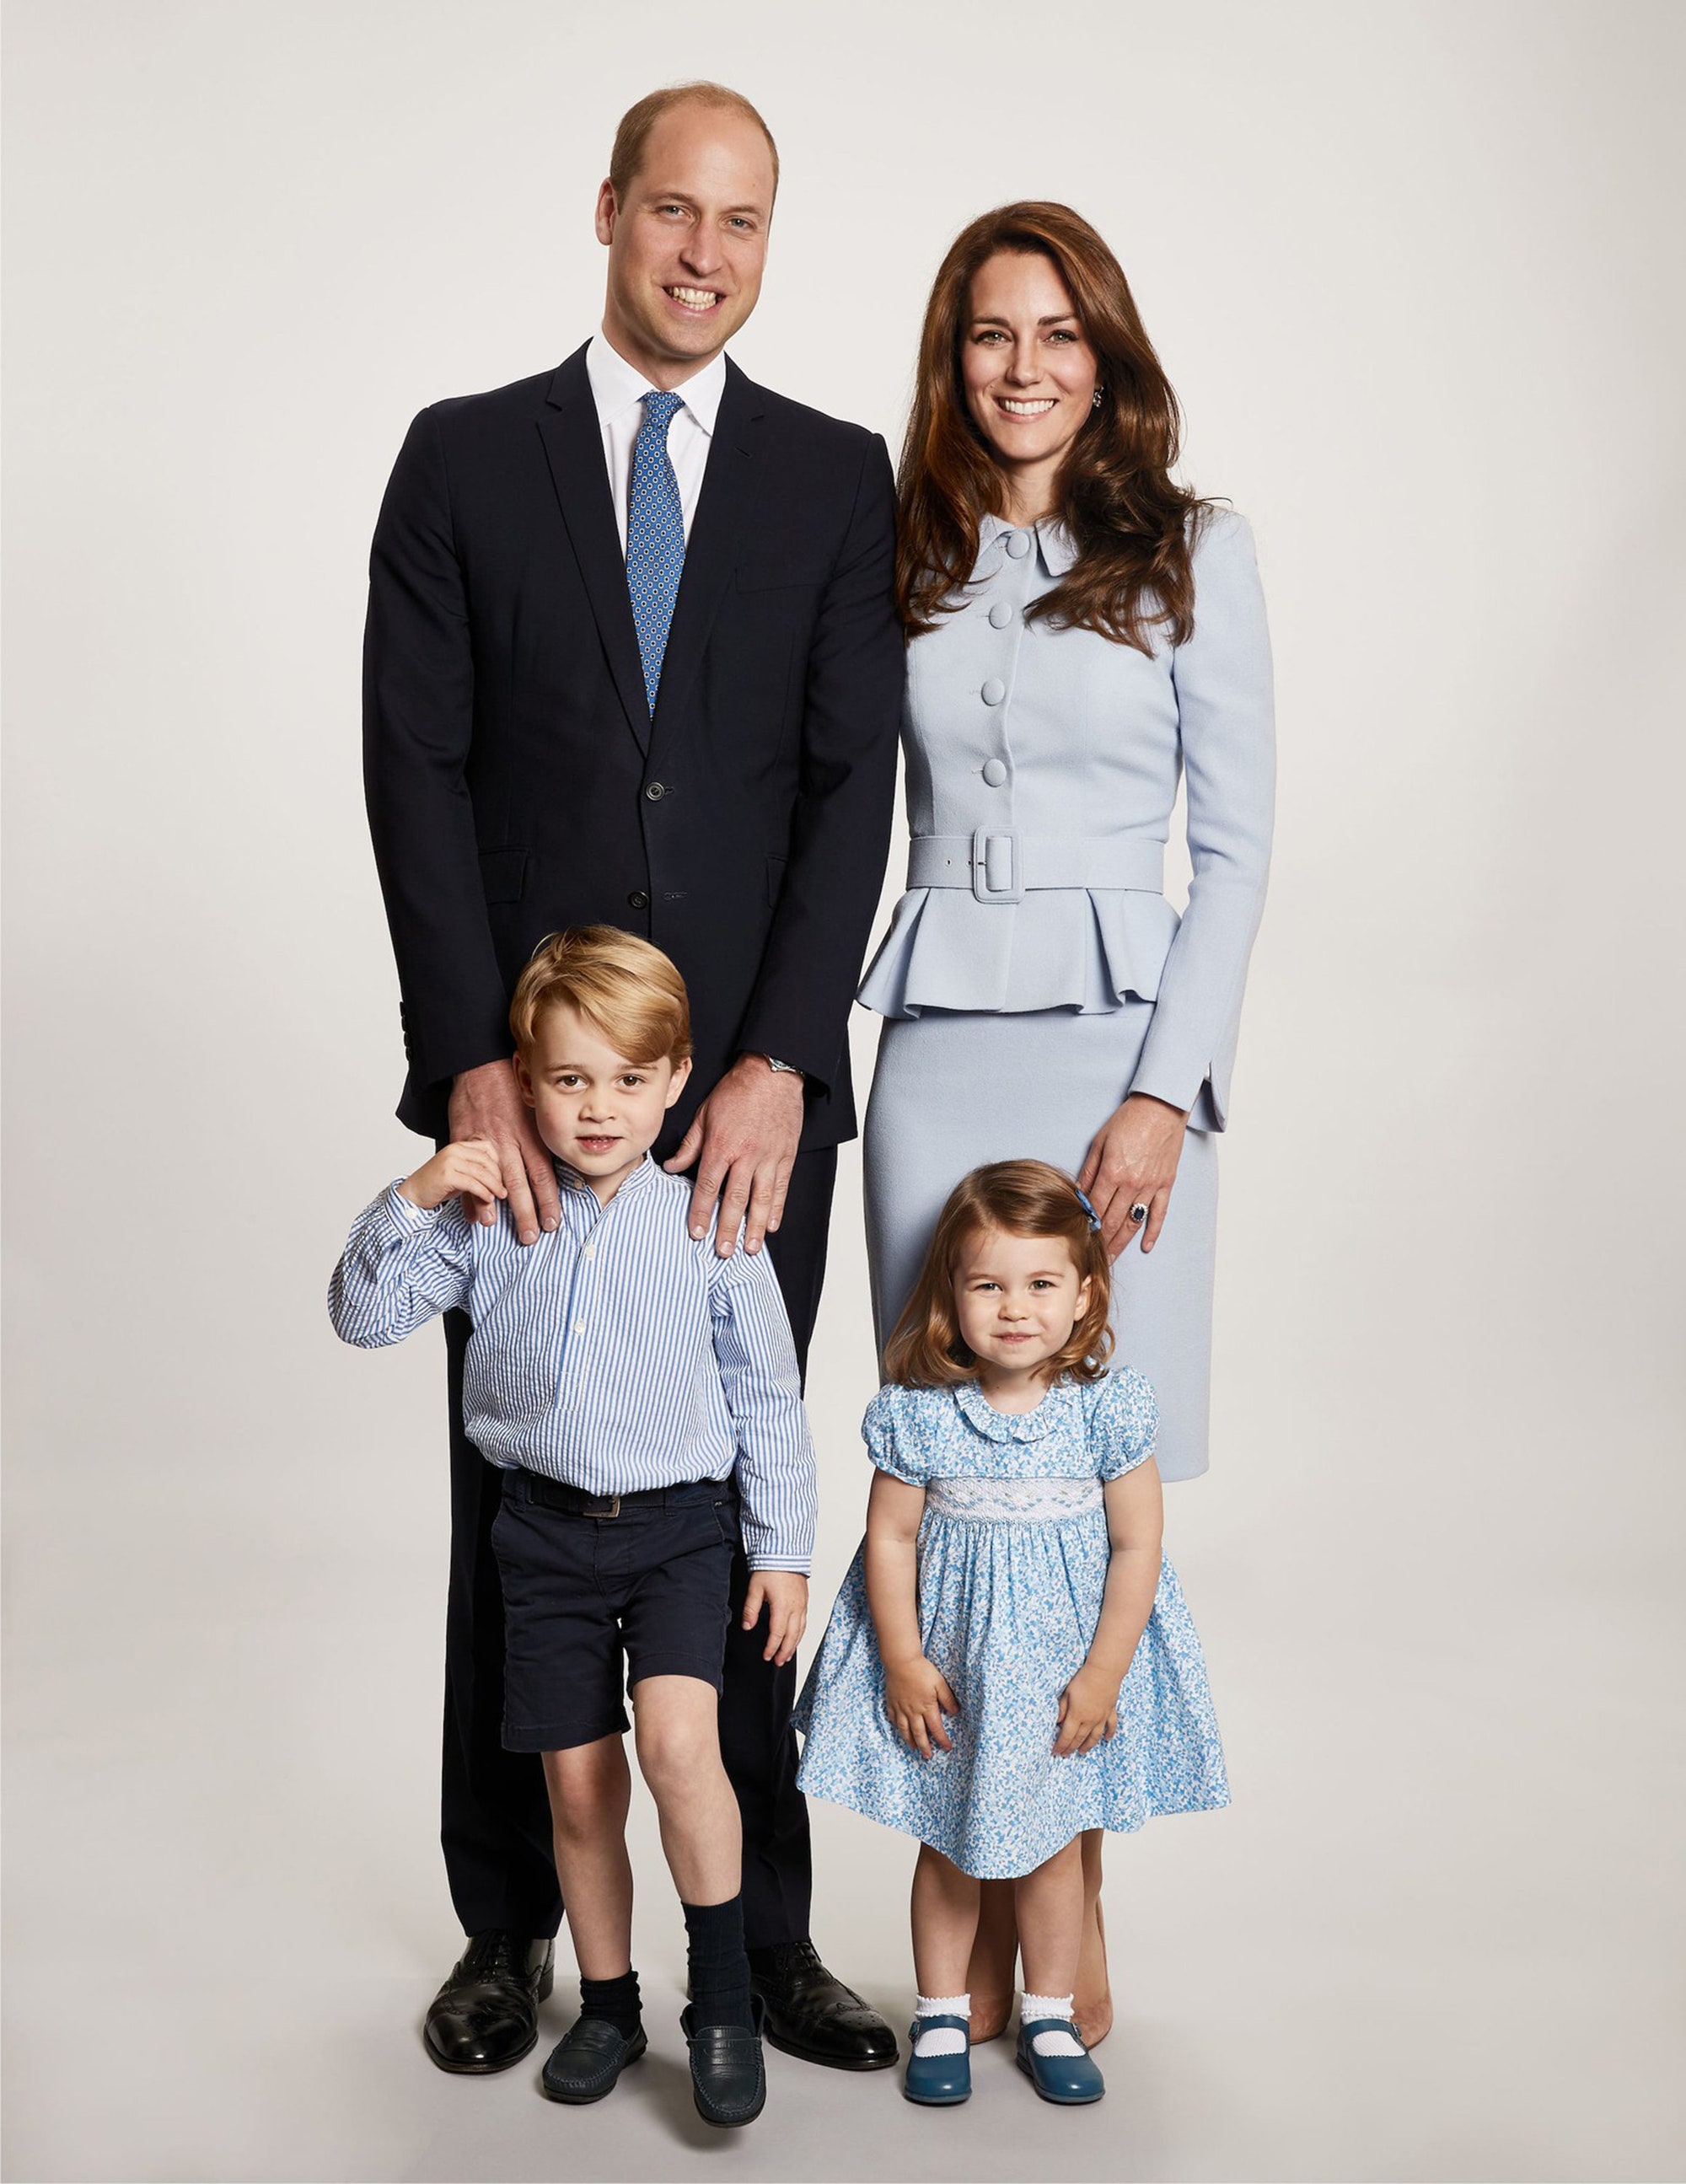  Cả gia đình hoàng tử William mặc đồ màu xanh da trời cho bức thiệp Giáng sinh năm 2017